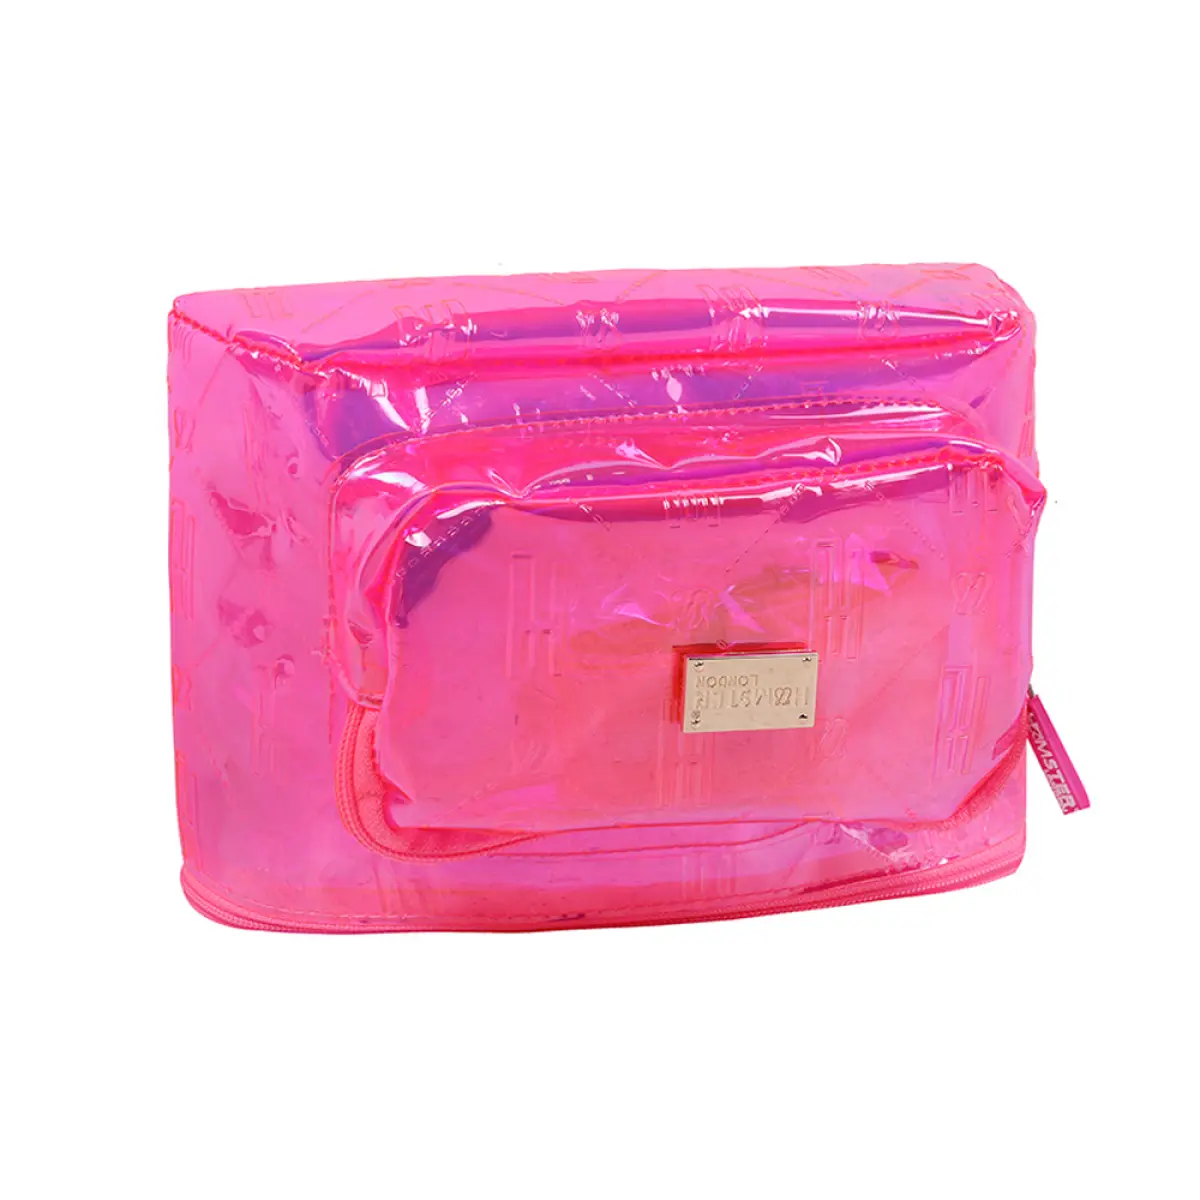 Hamster London Waist Bag Raver Pink Pink 9Y+